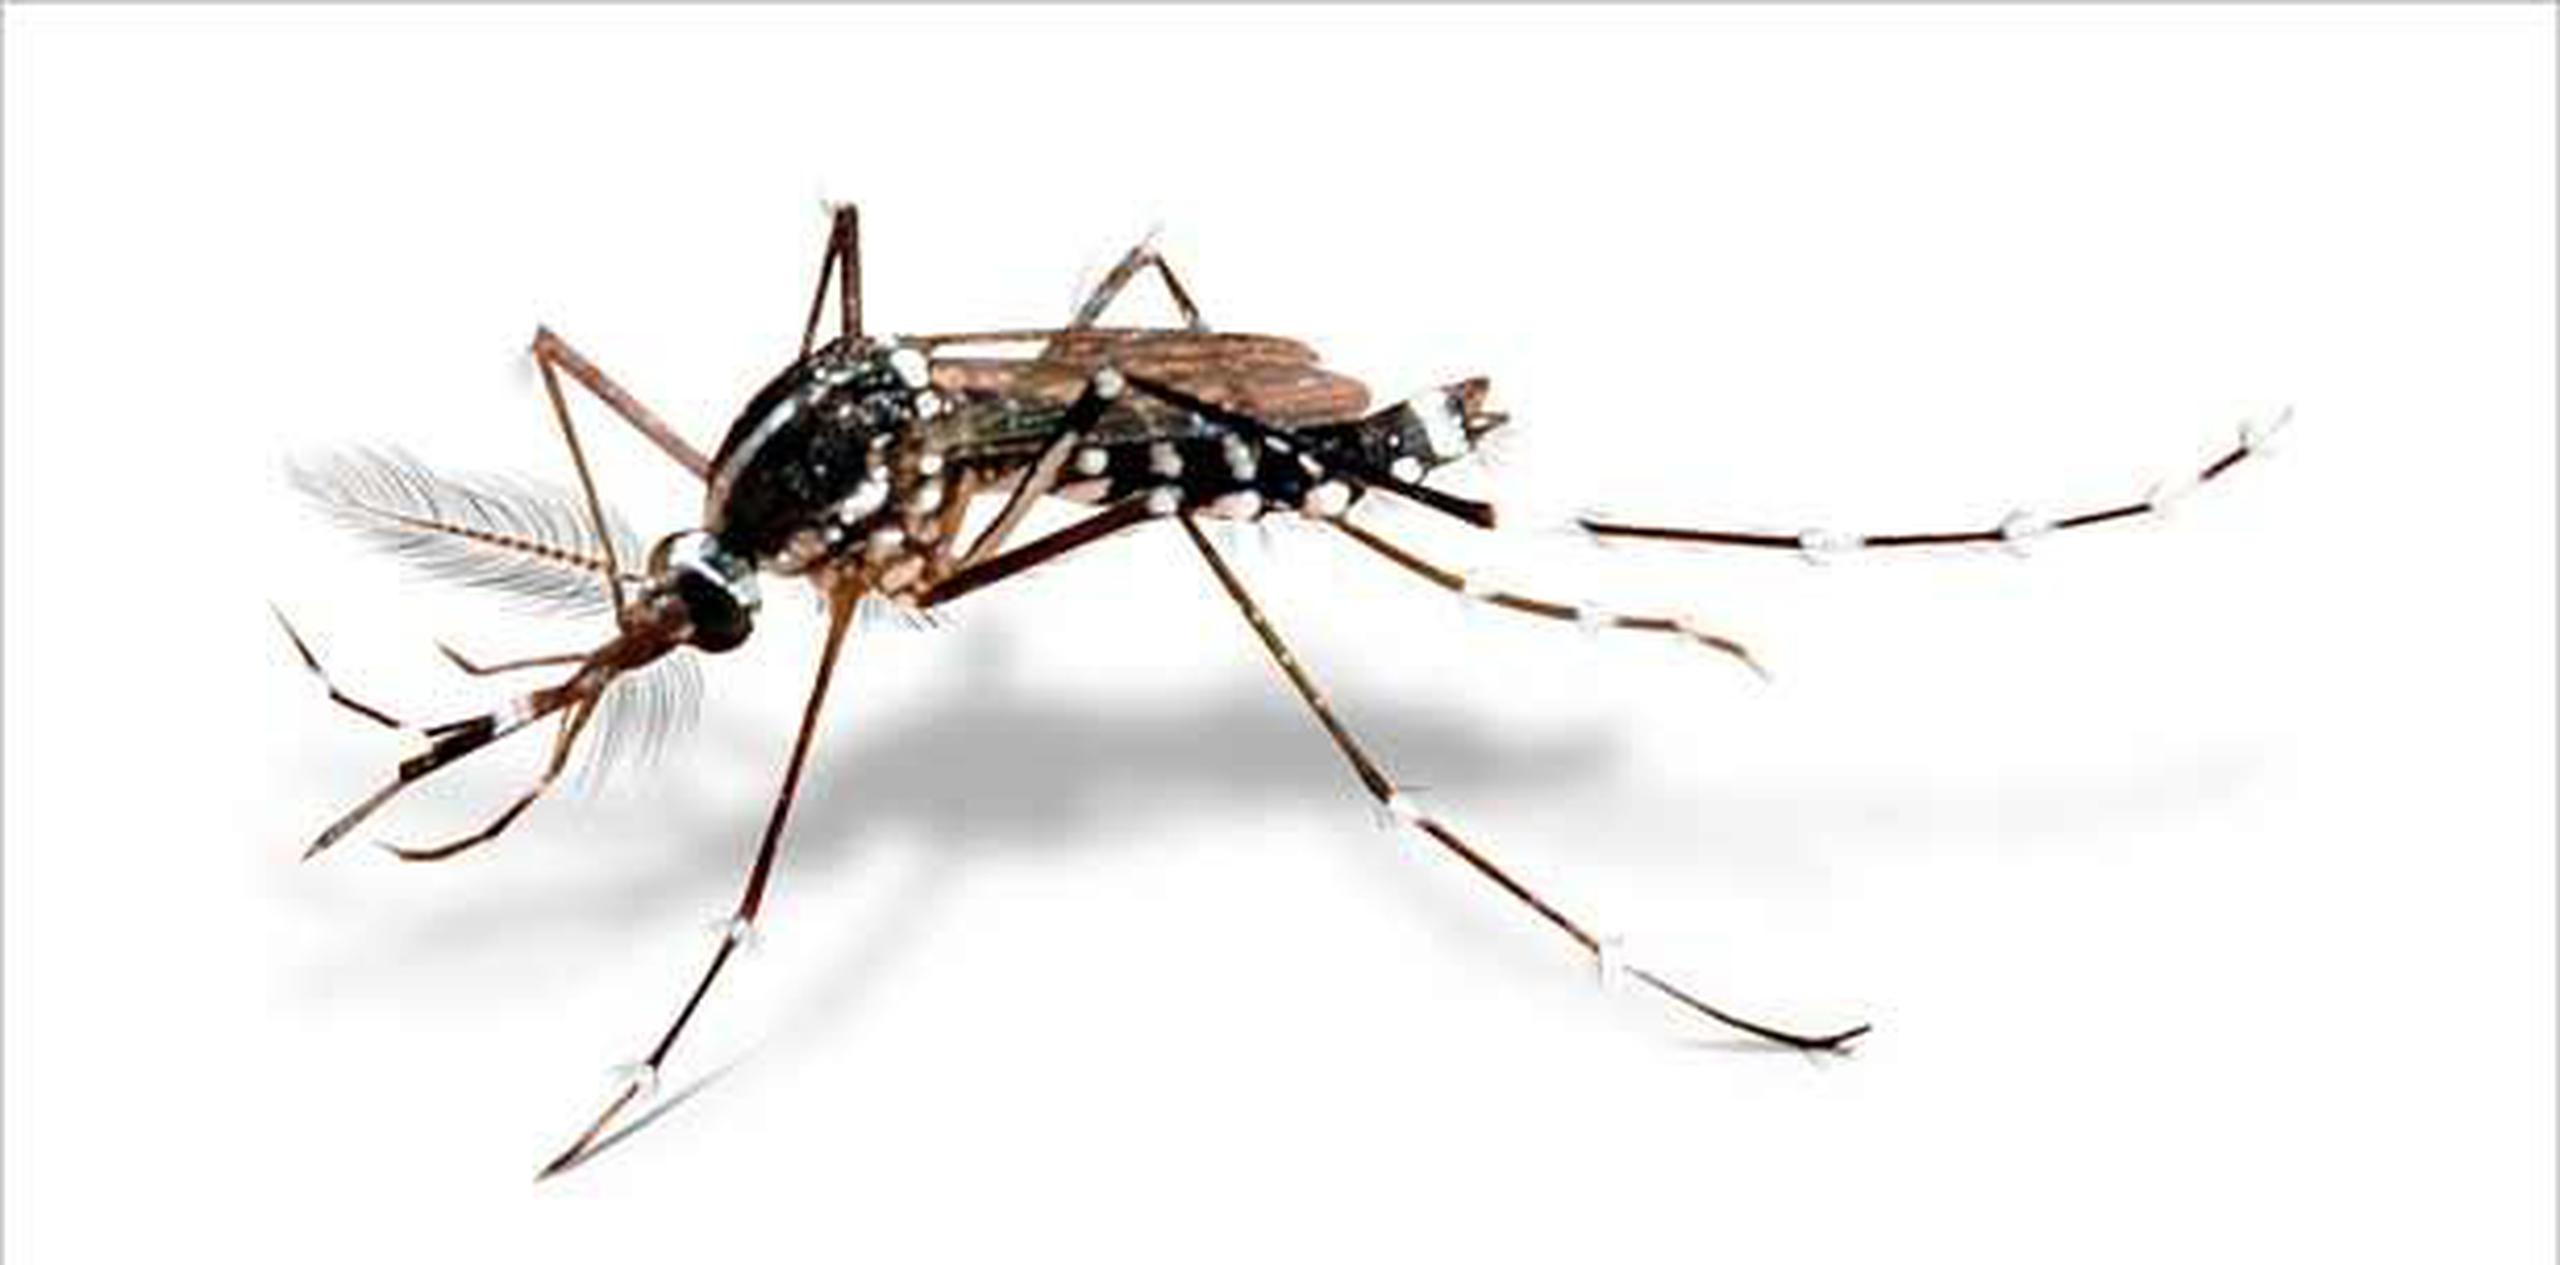 El zika se transmite mediante picaduras de la misma clase de mosquitos que pueden propagar otras enfermedades tropicales, como el dengue, el chikungunya y la fiebre amarilla.